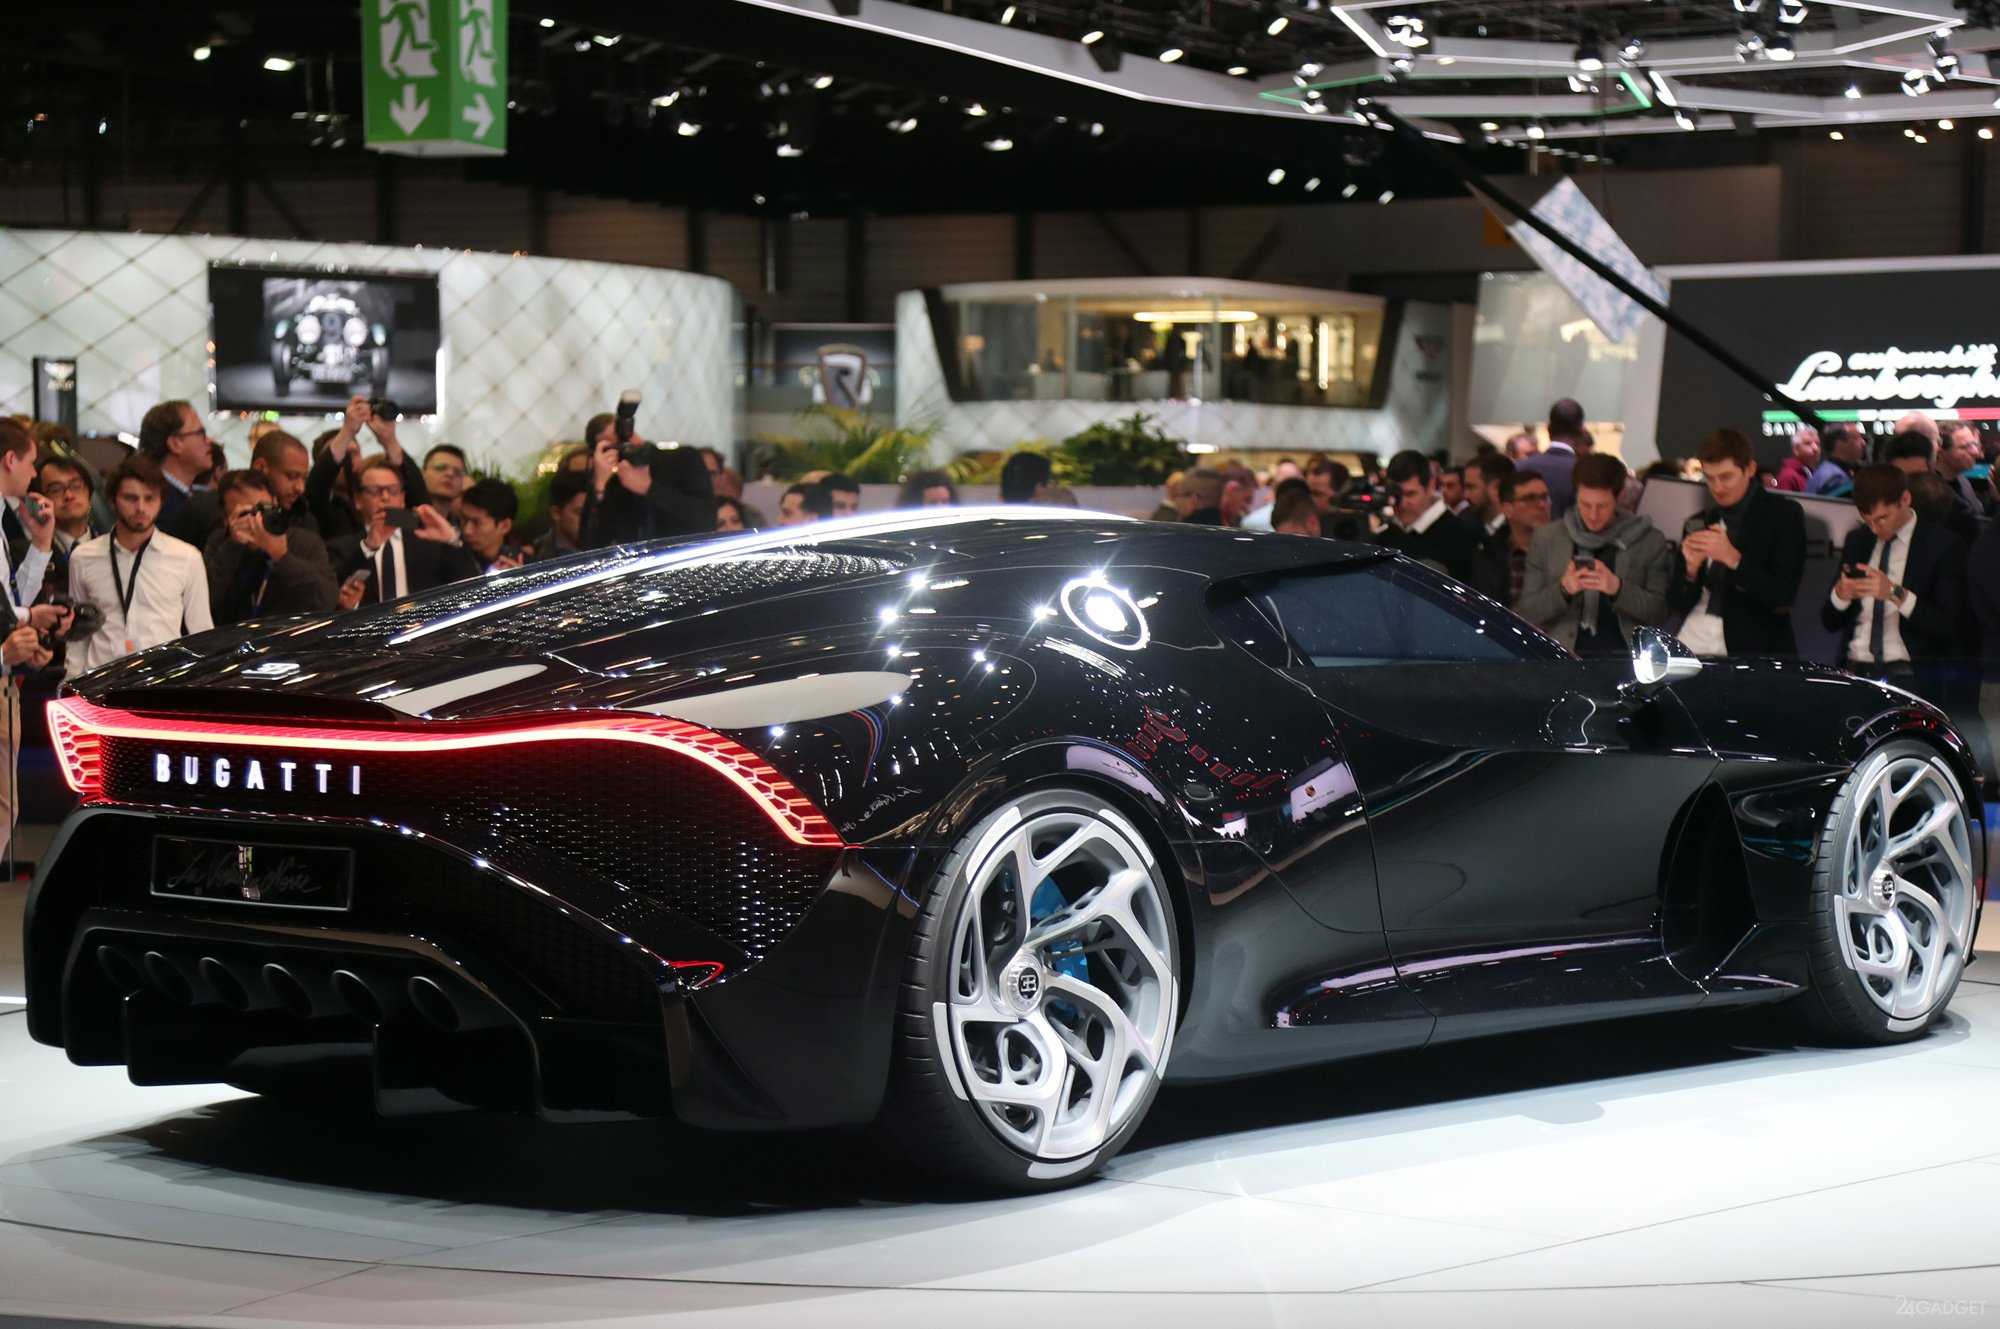 Bugatti la voiture noire фото